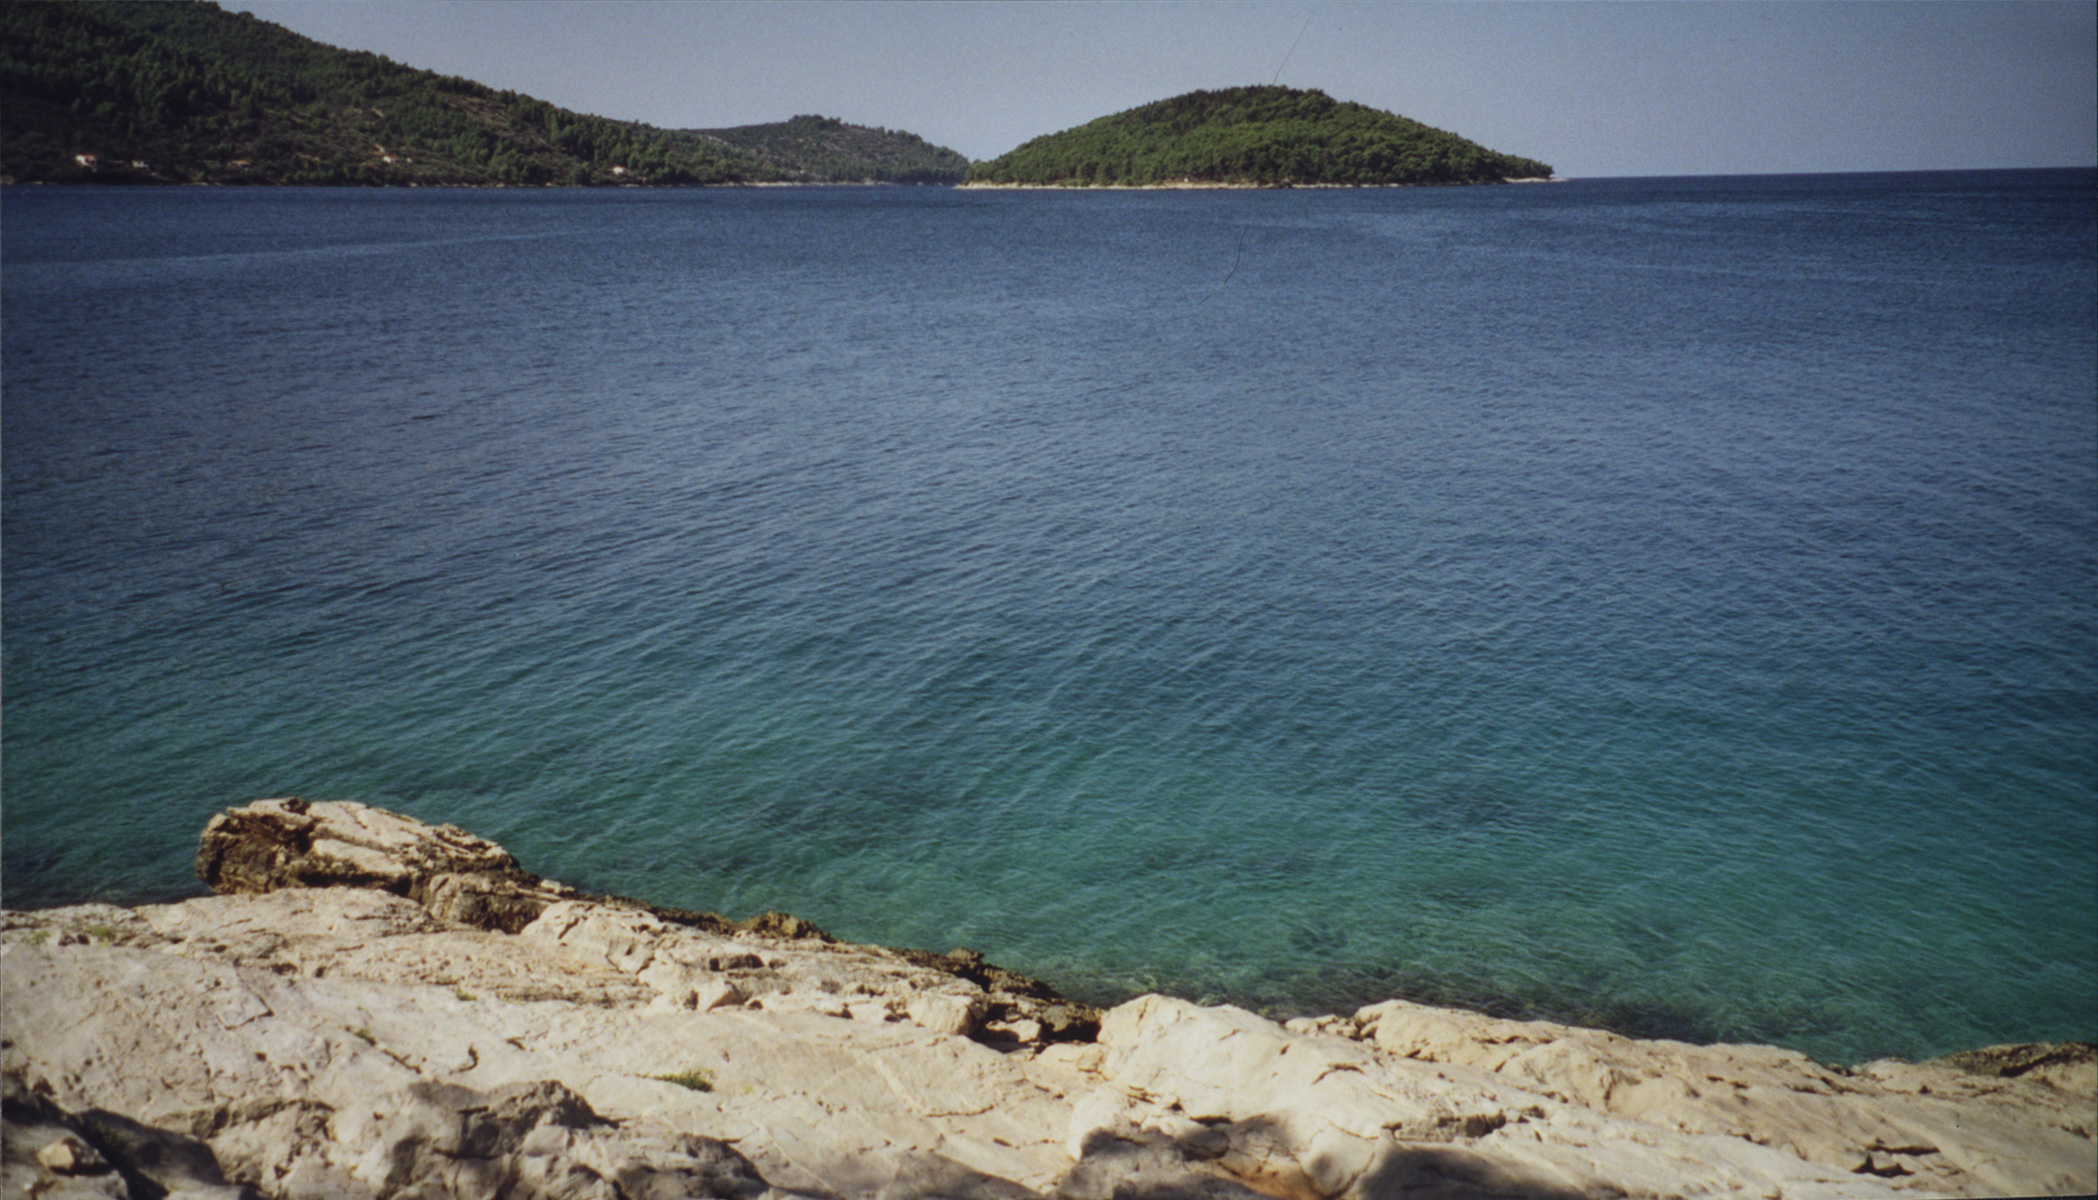 Island of vela luka, croatia photo